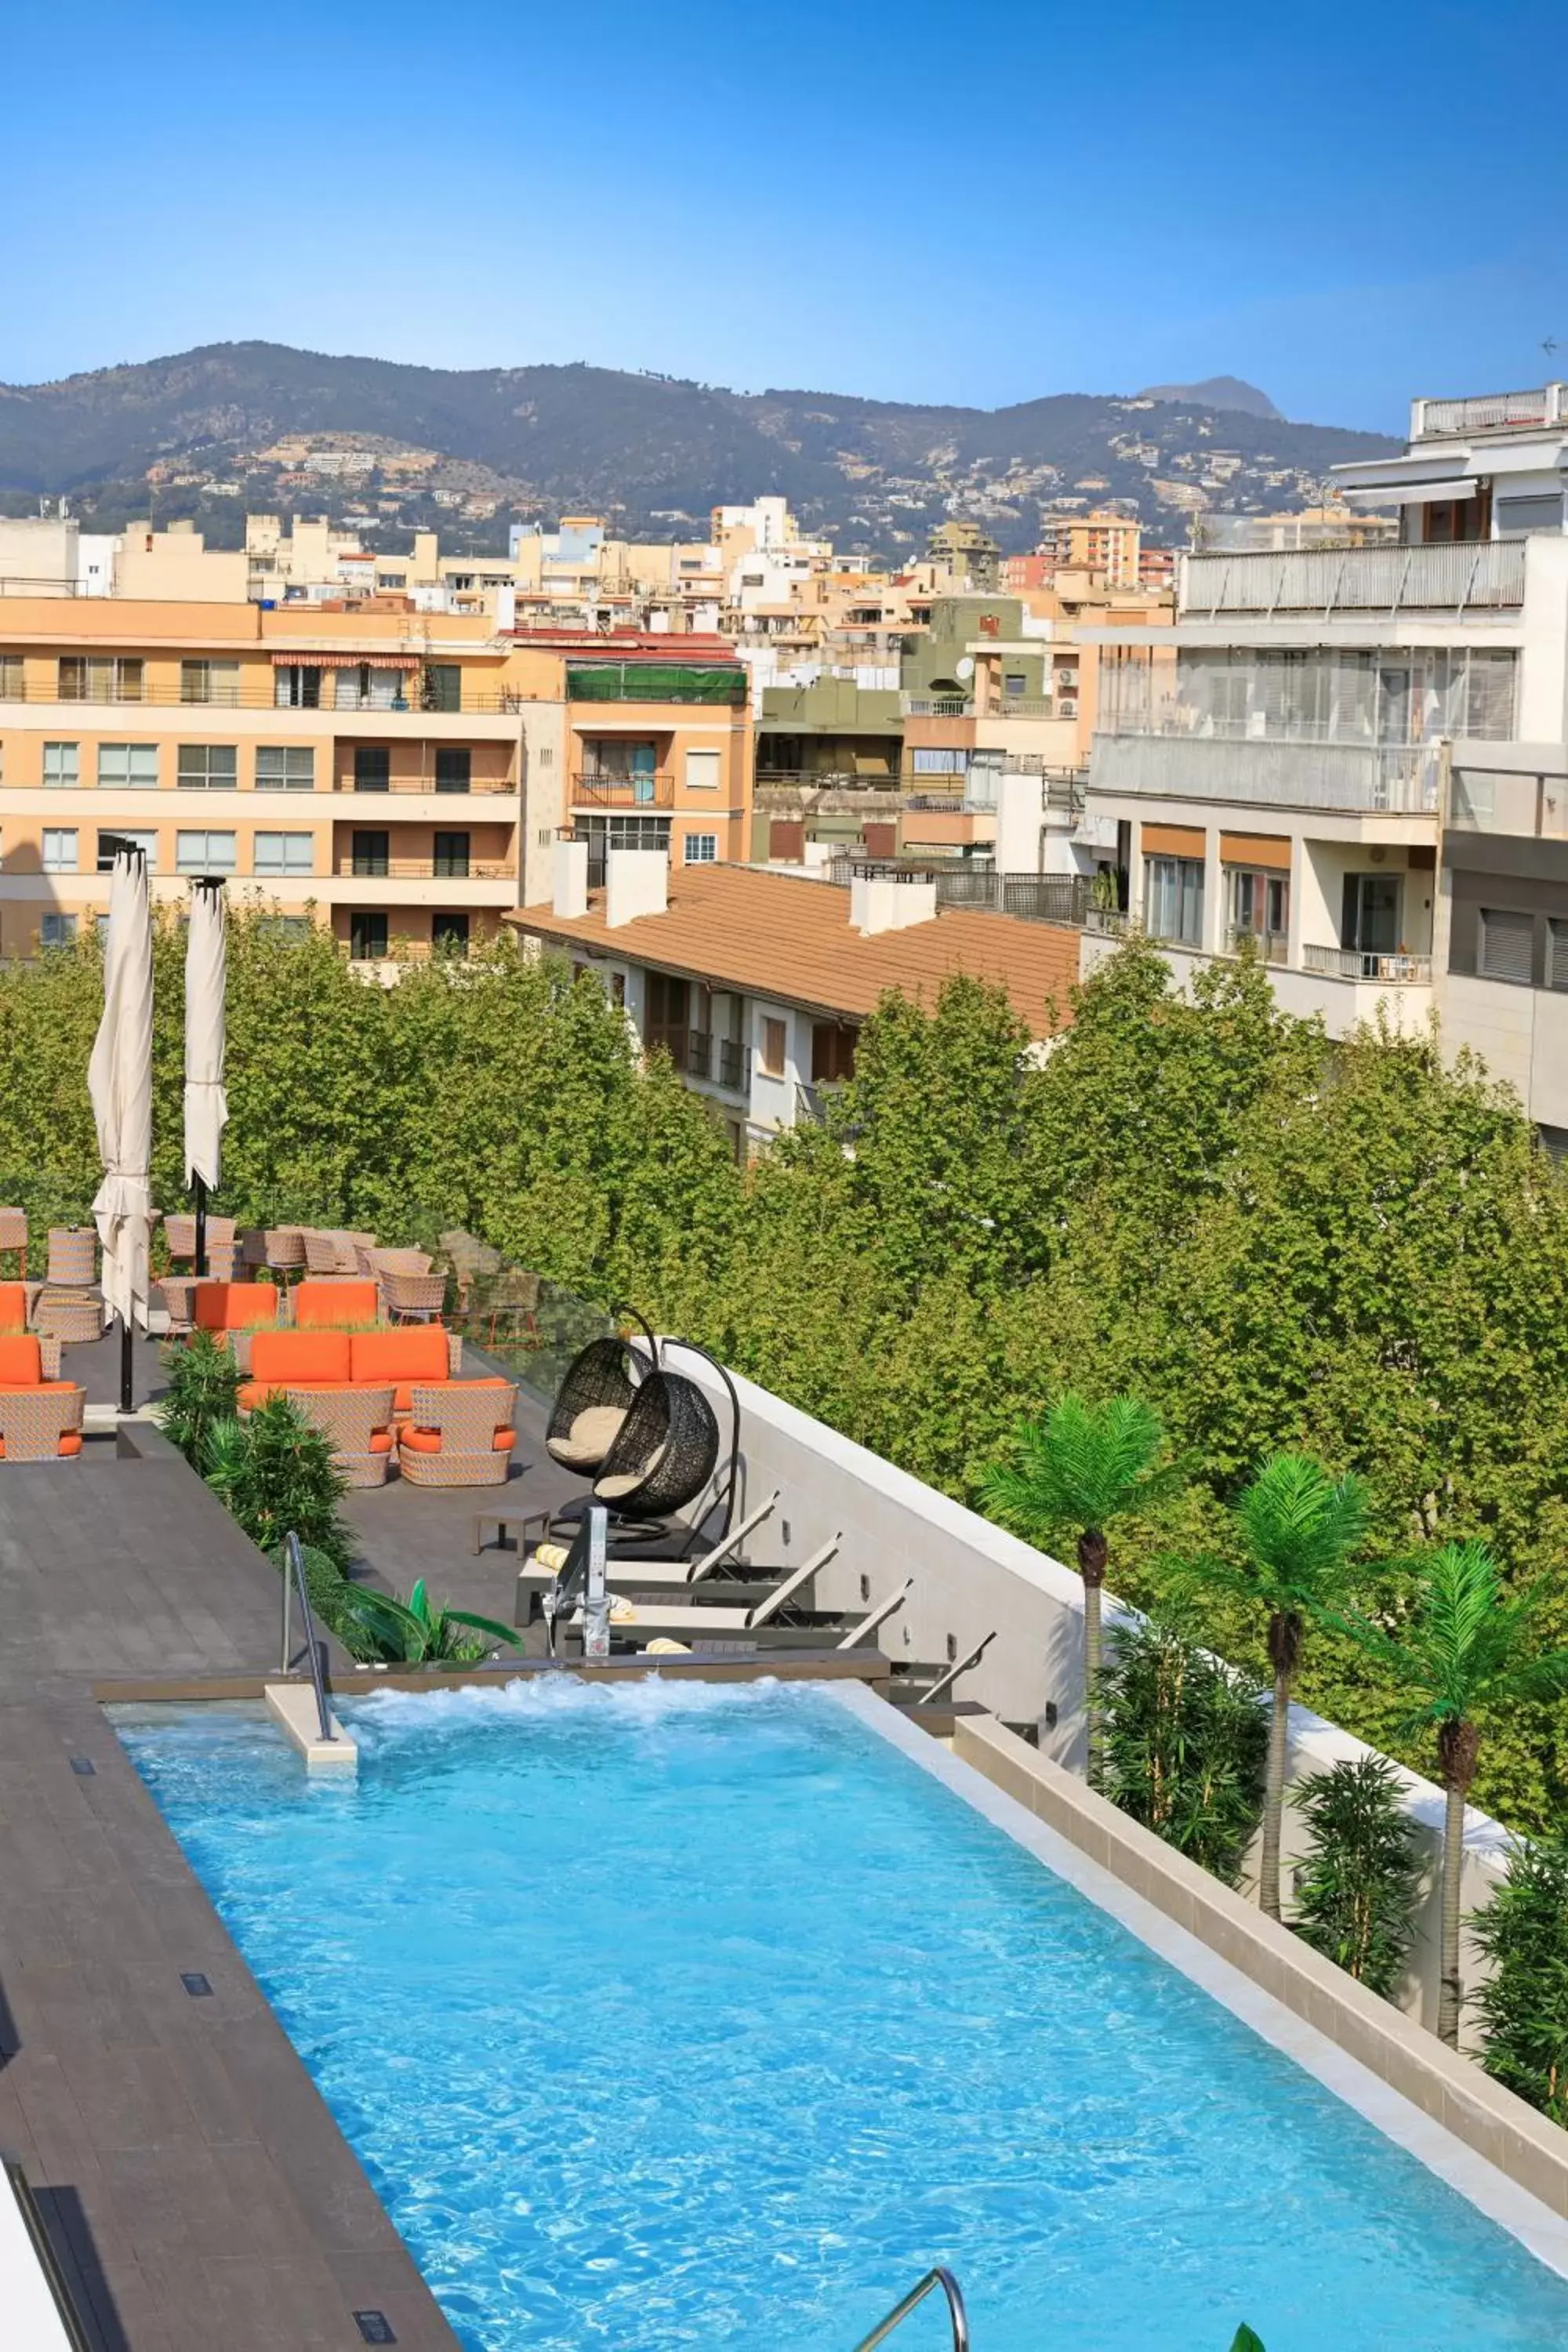 Pool View in Protur Naisa Palma Hotel